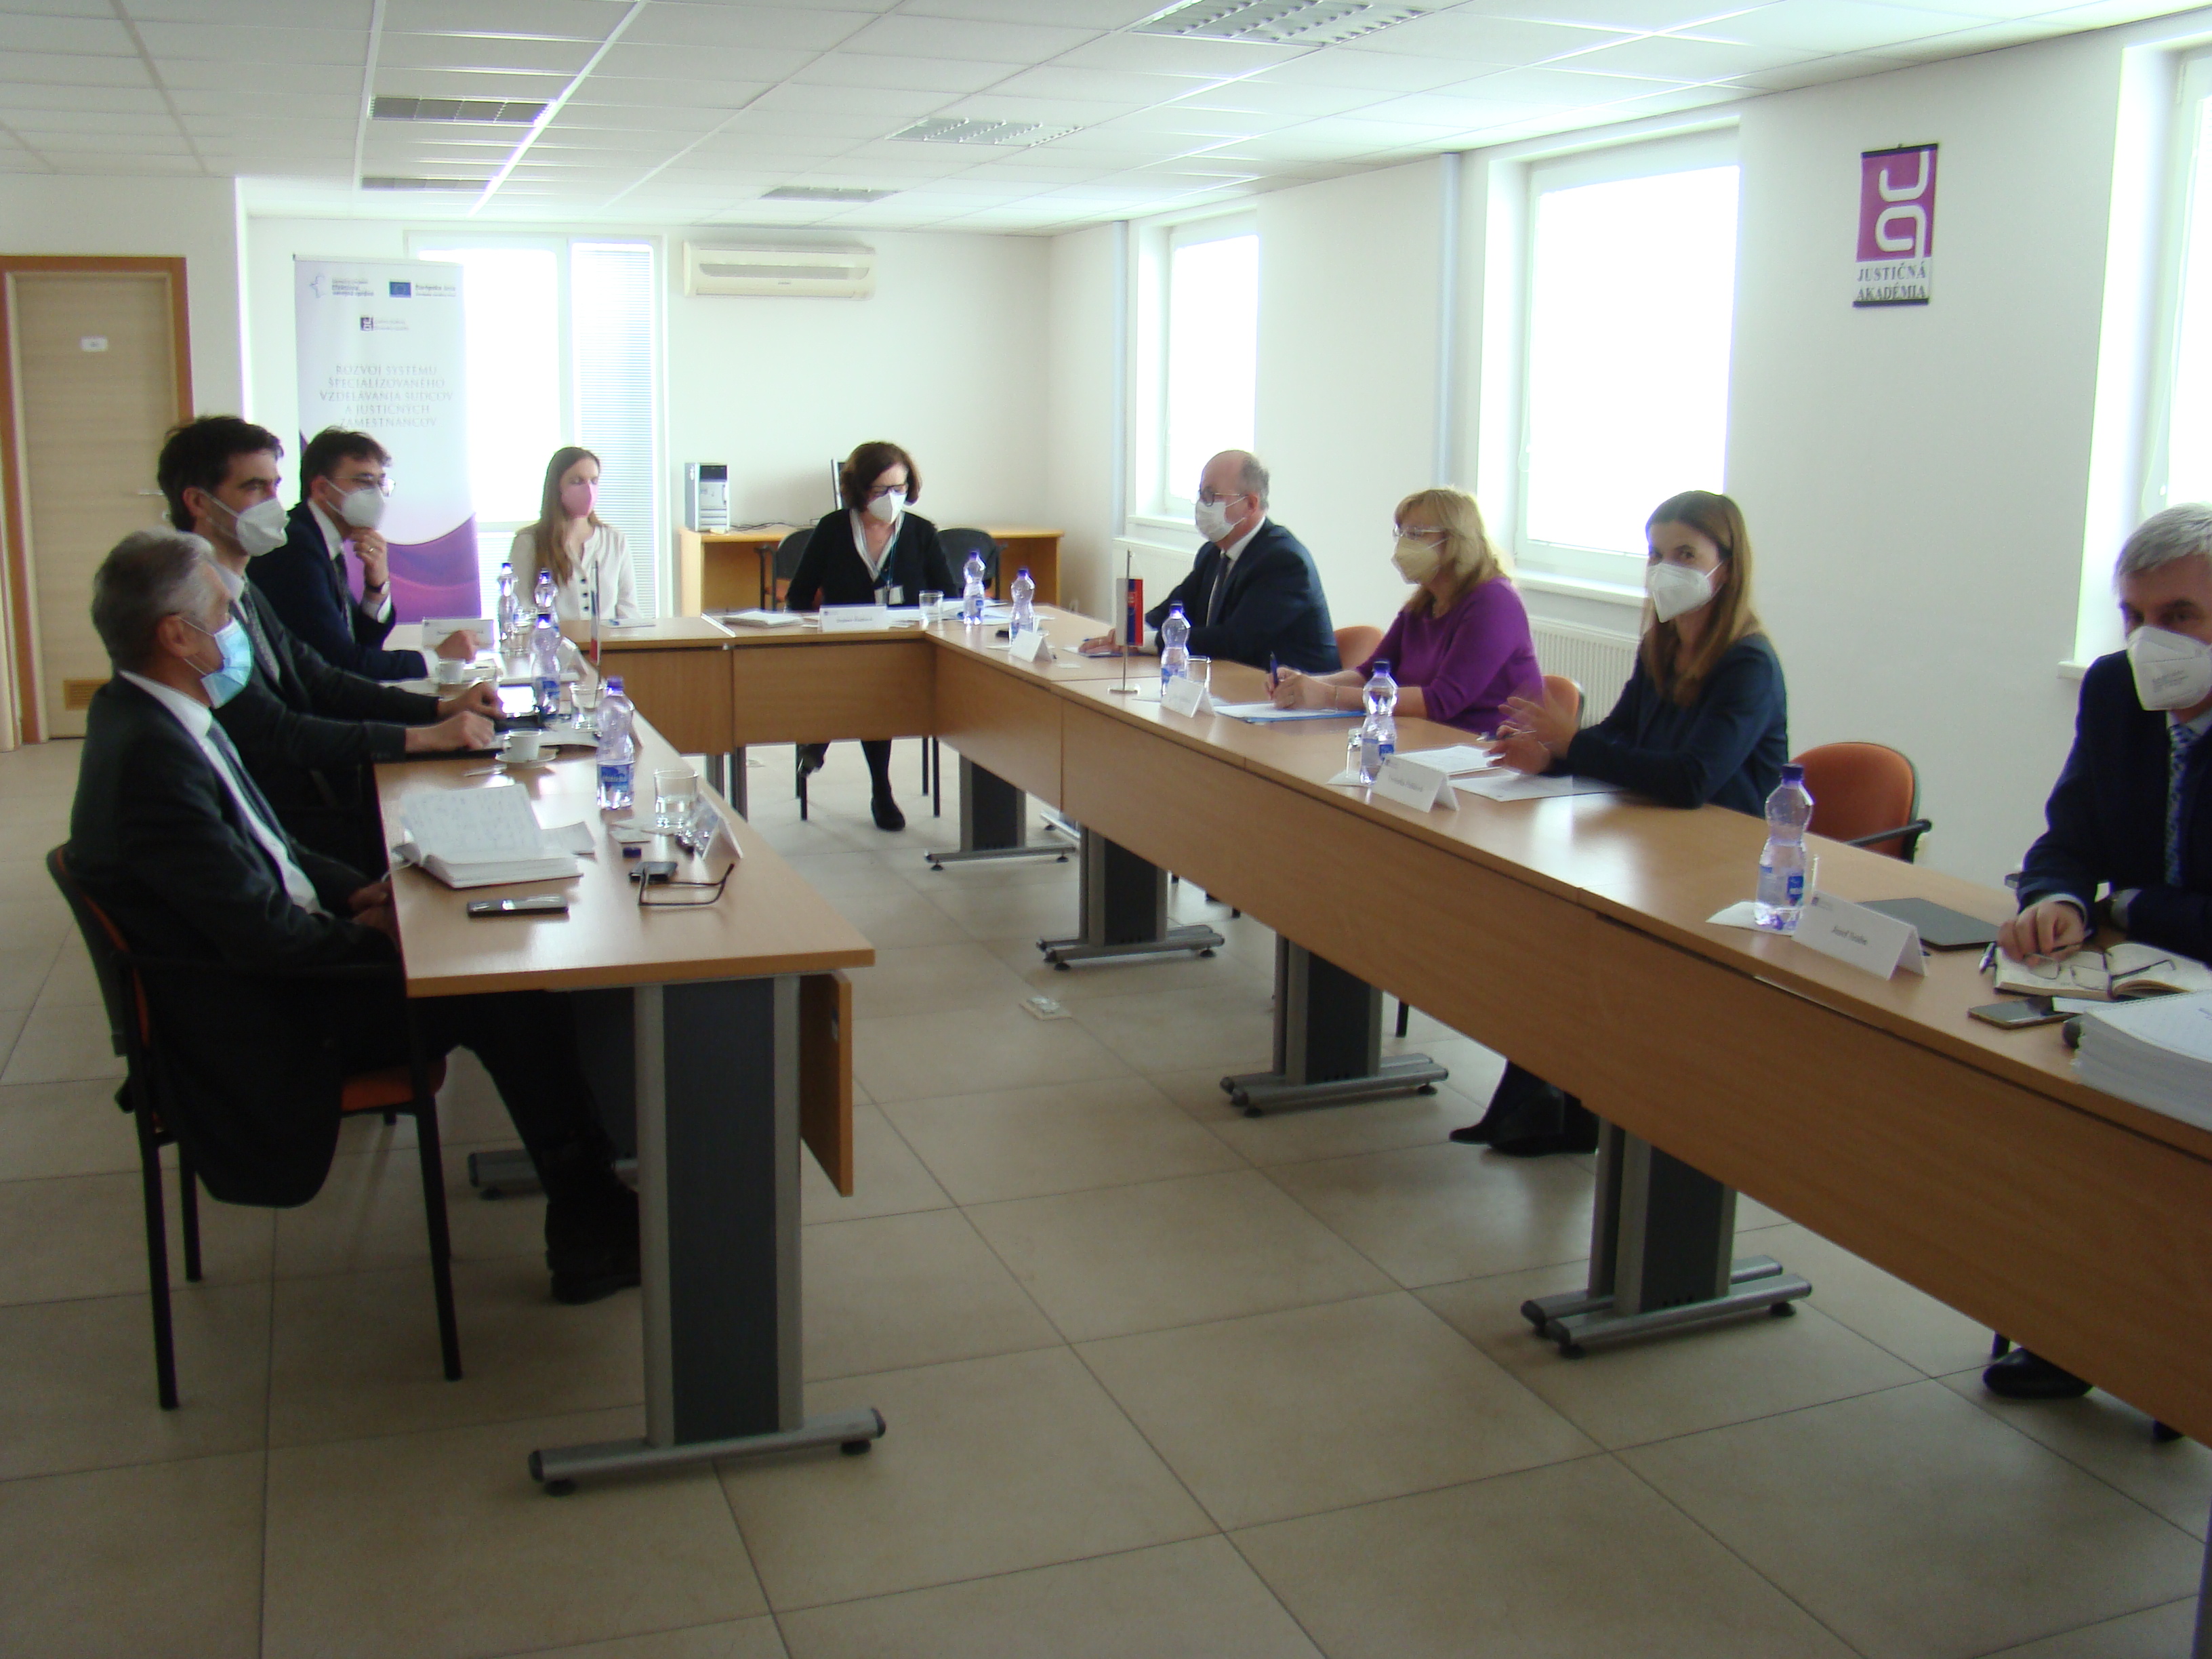 Prijatie zástupcov Francúzskeho veľvyslanectva v Justičnej akadémii Slovenskej republiky v Pezinku